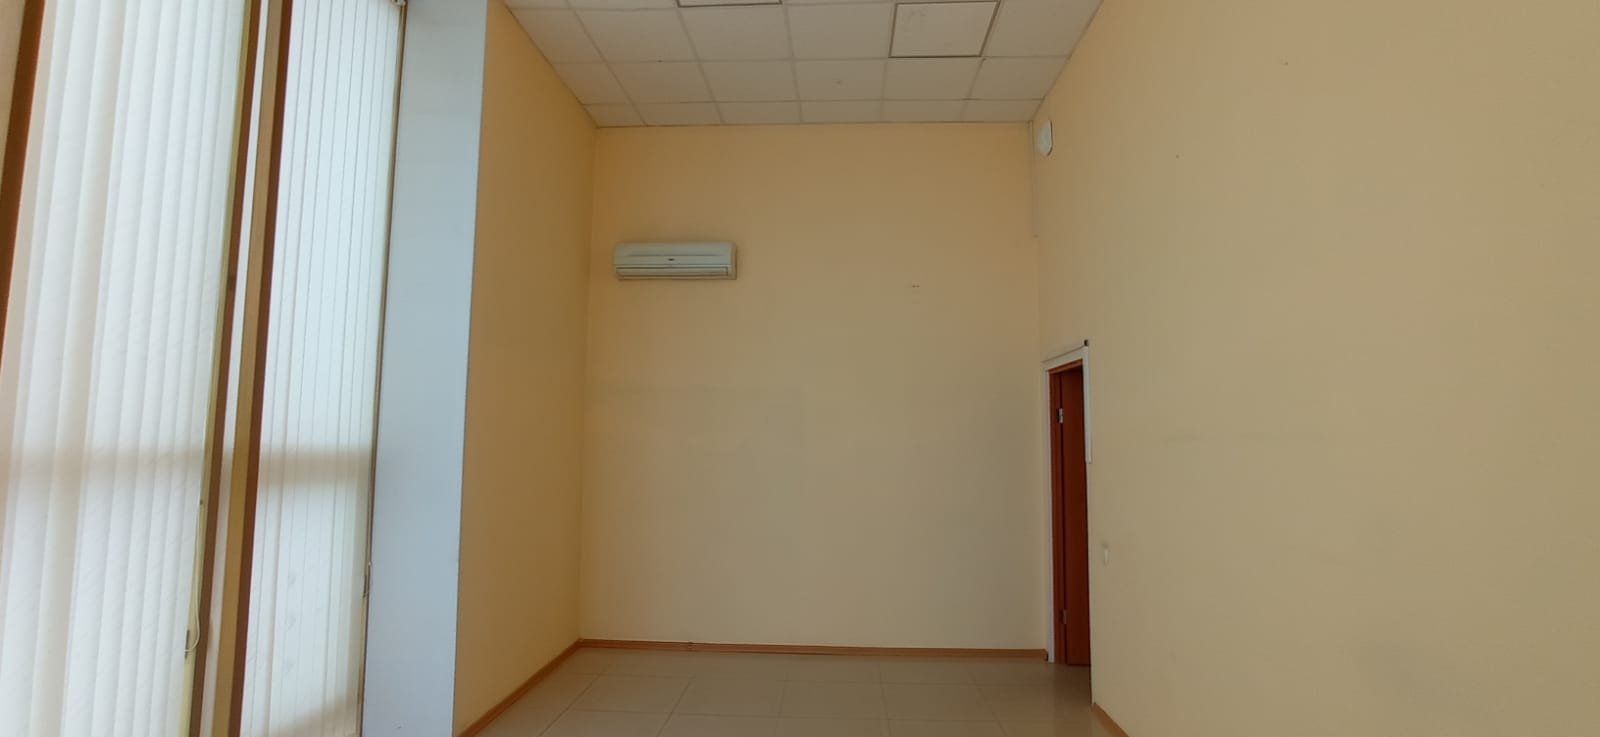 Предлагаем к аренде офисные помещения в  центре г.Армавир площадью от 17 м² до 20 м² на 2-ом этаже, по ул. Комсомольская напрямую от собственника._4